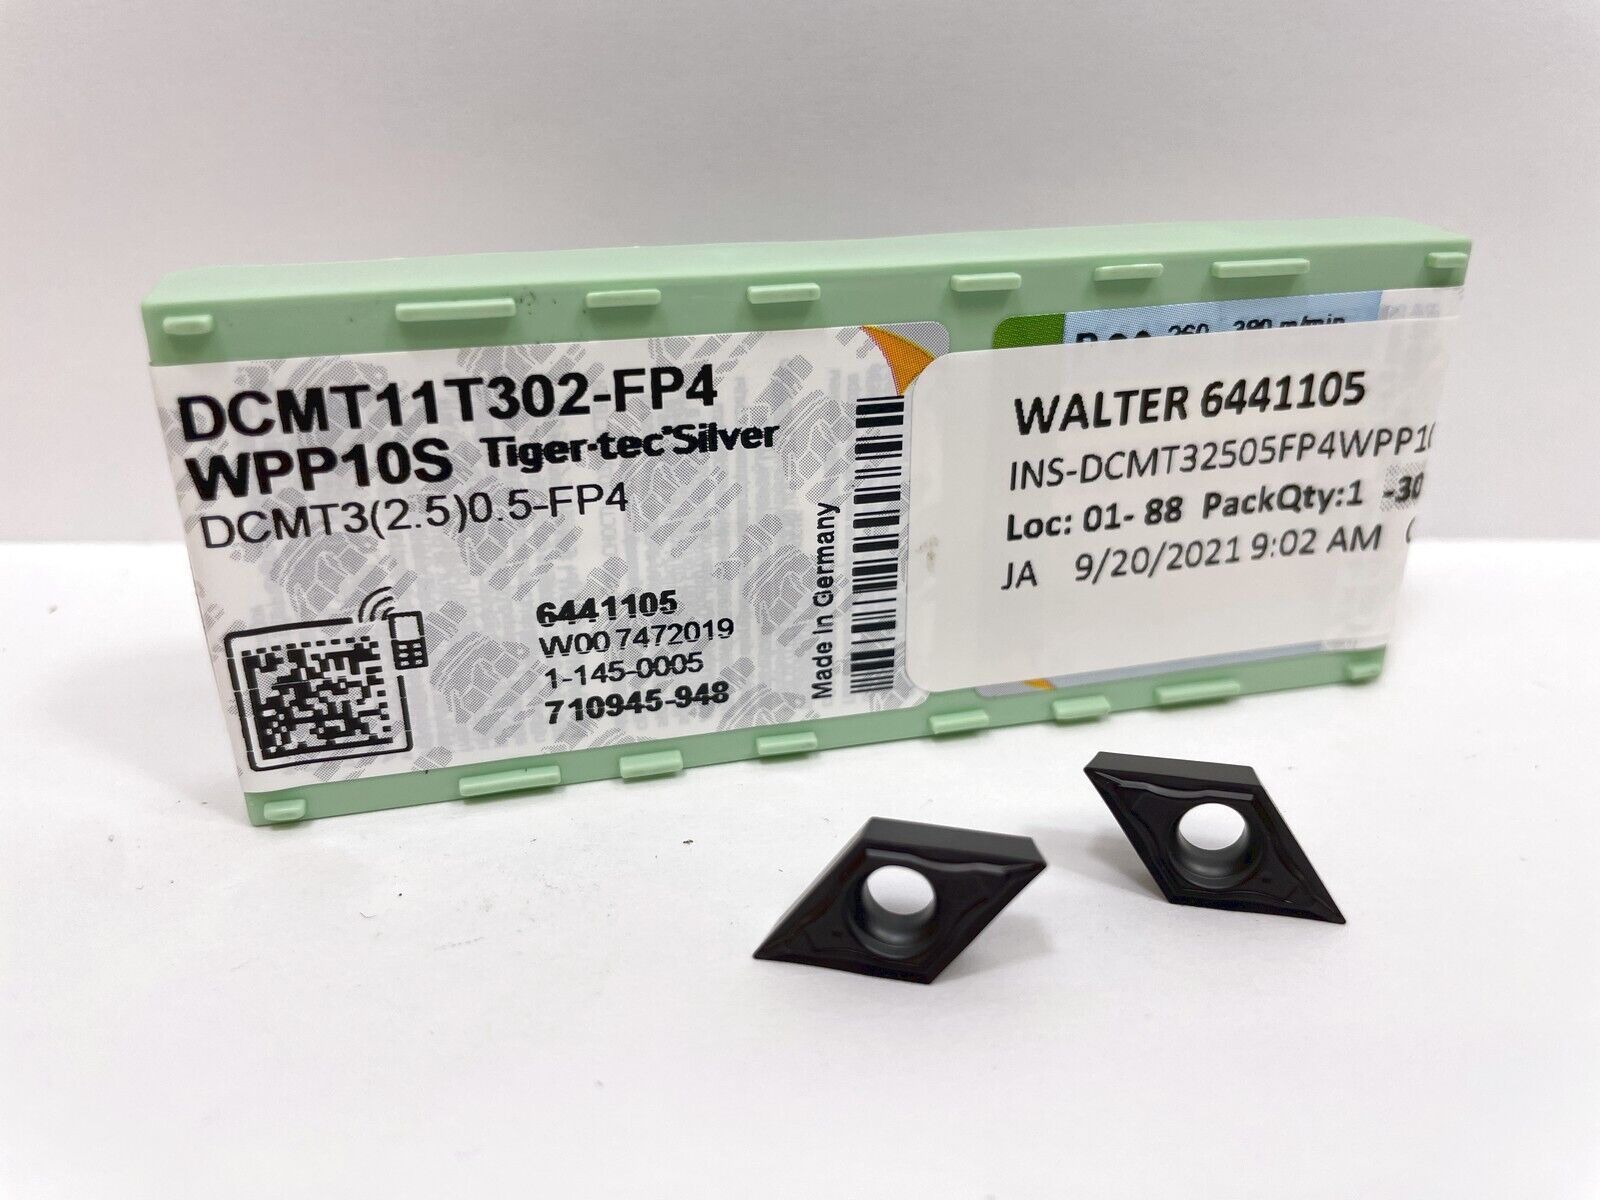 WALTER DCMT3(2.5)0.5-FP4 DCMT11T302-FP4 New Carbide Inserts Grade WPP10S 10pcs